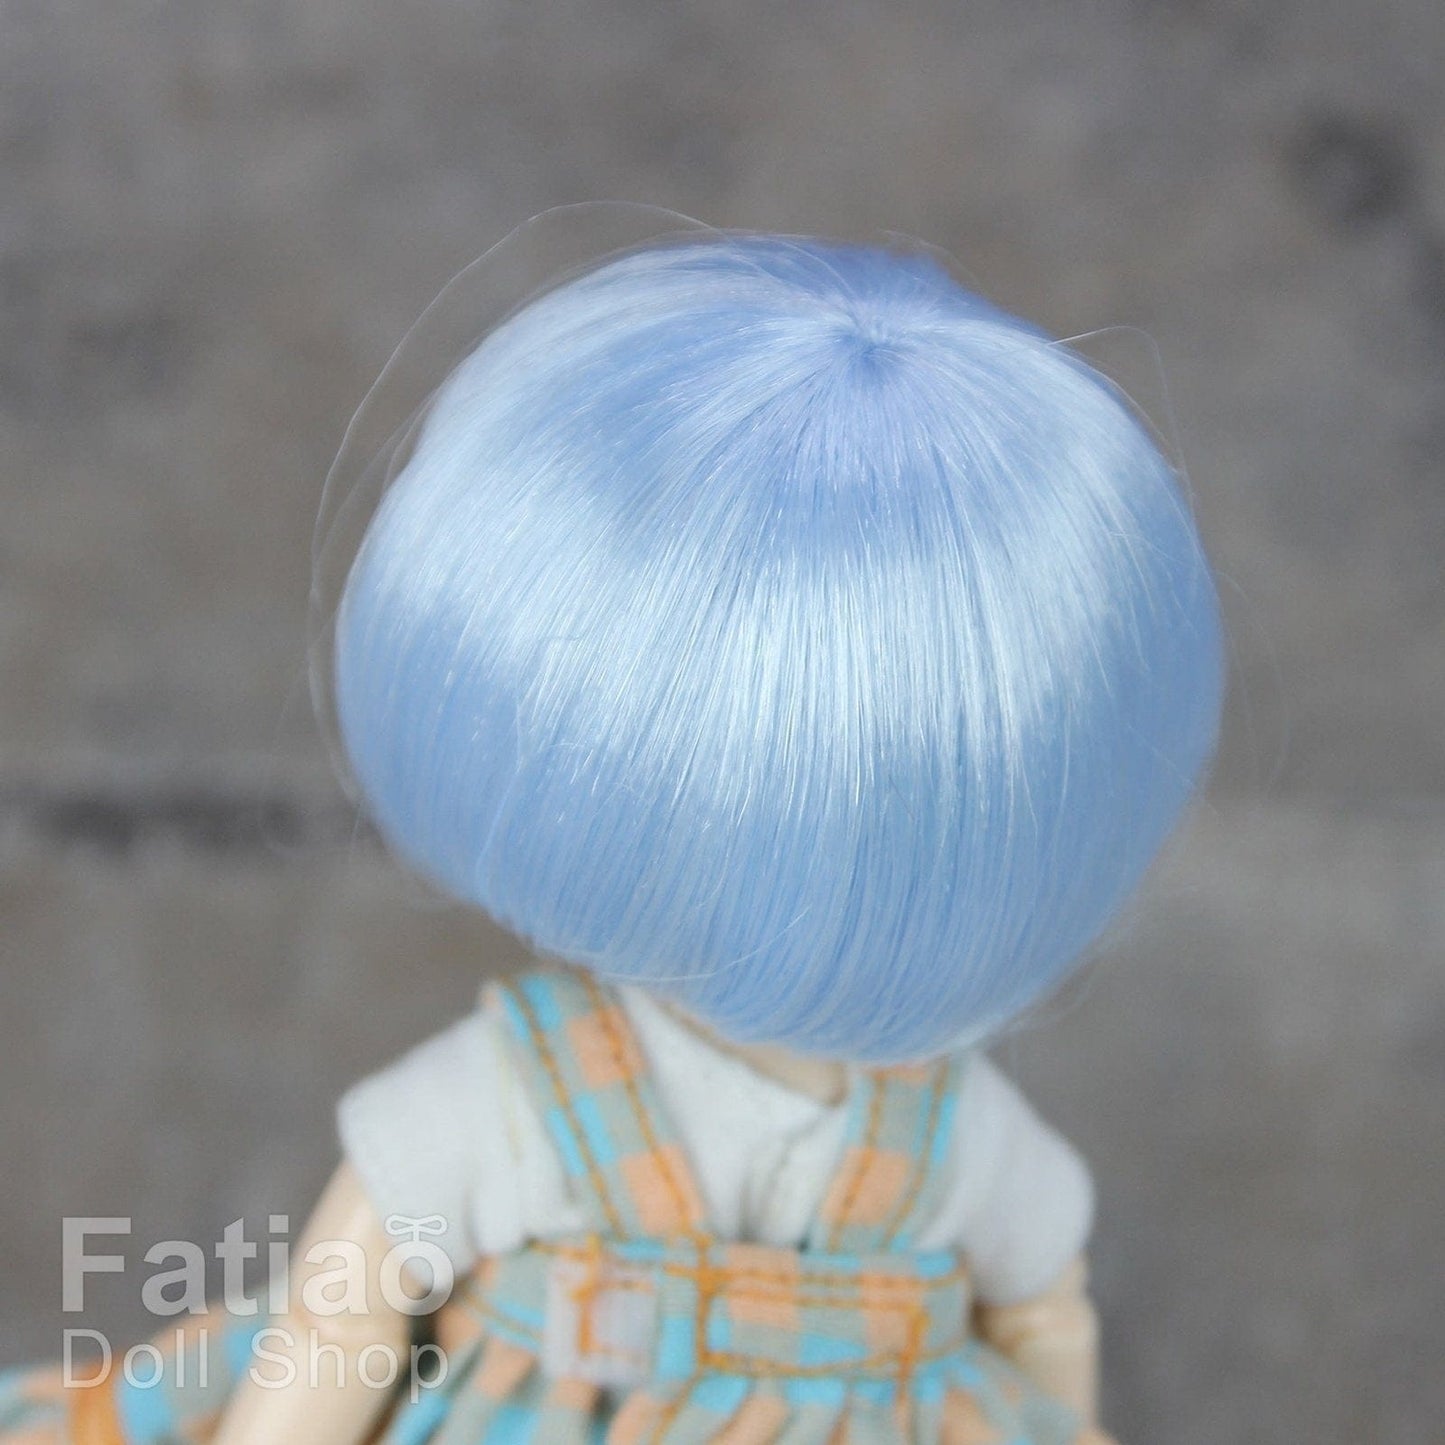 【Fatiao Doll Shop】FWF-256 娃用假髮 多色 / 3-4吋 BJD 12分 pukipuki